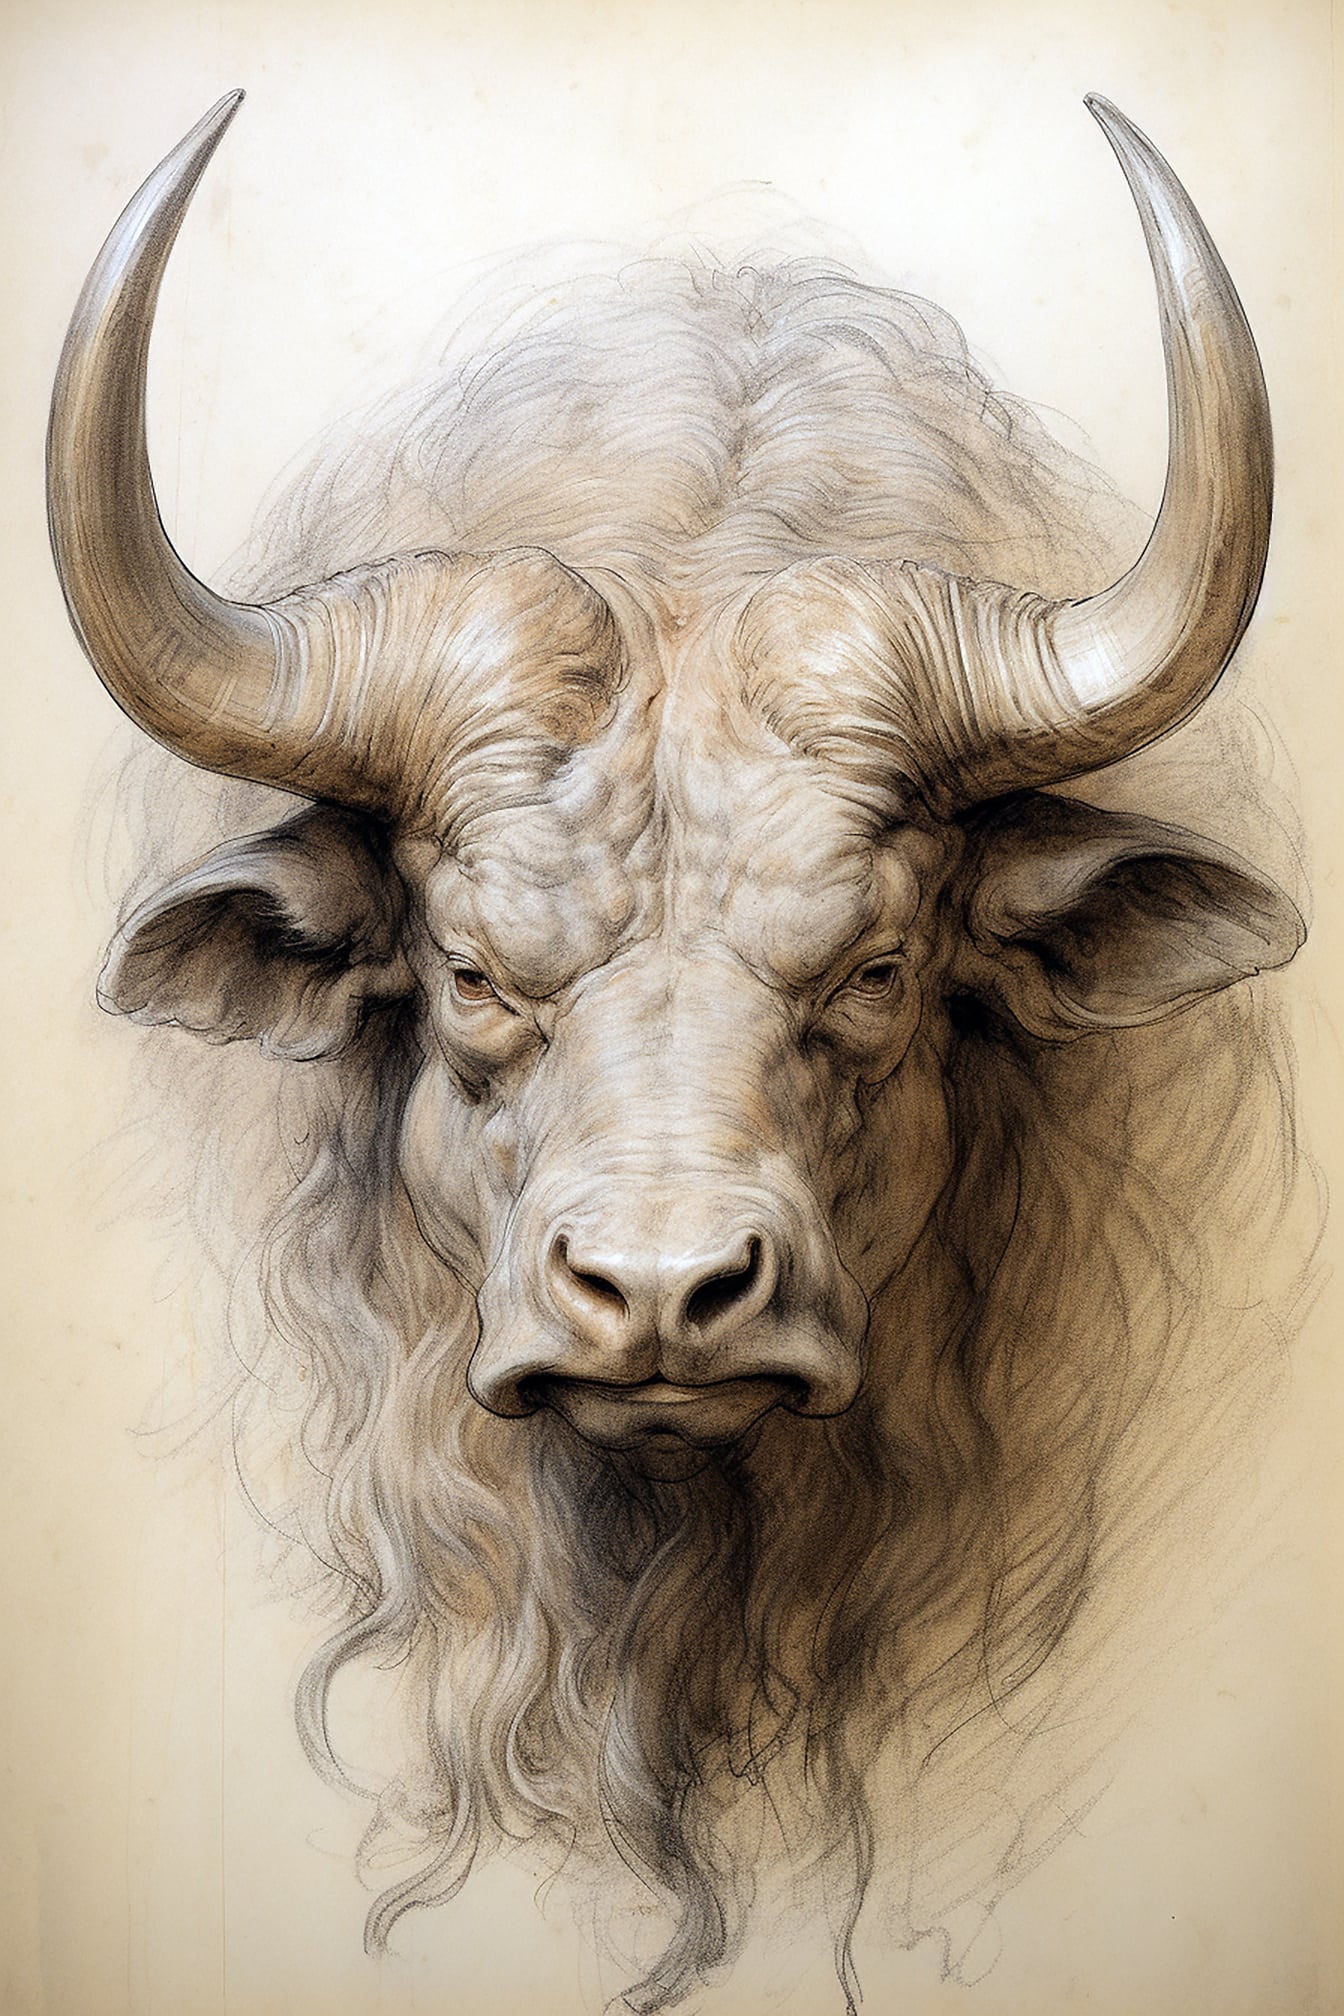 Retrato de boceto de primer plano del toro de cuernos largos